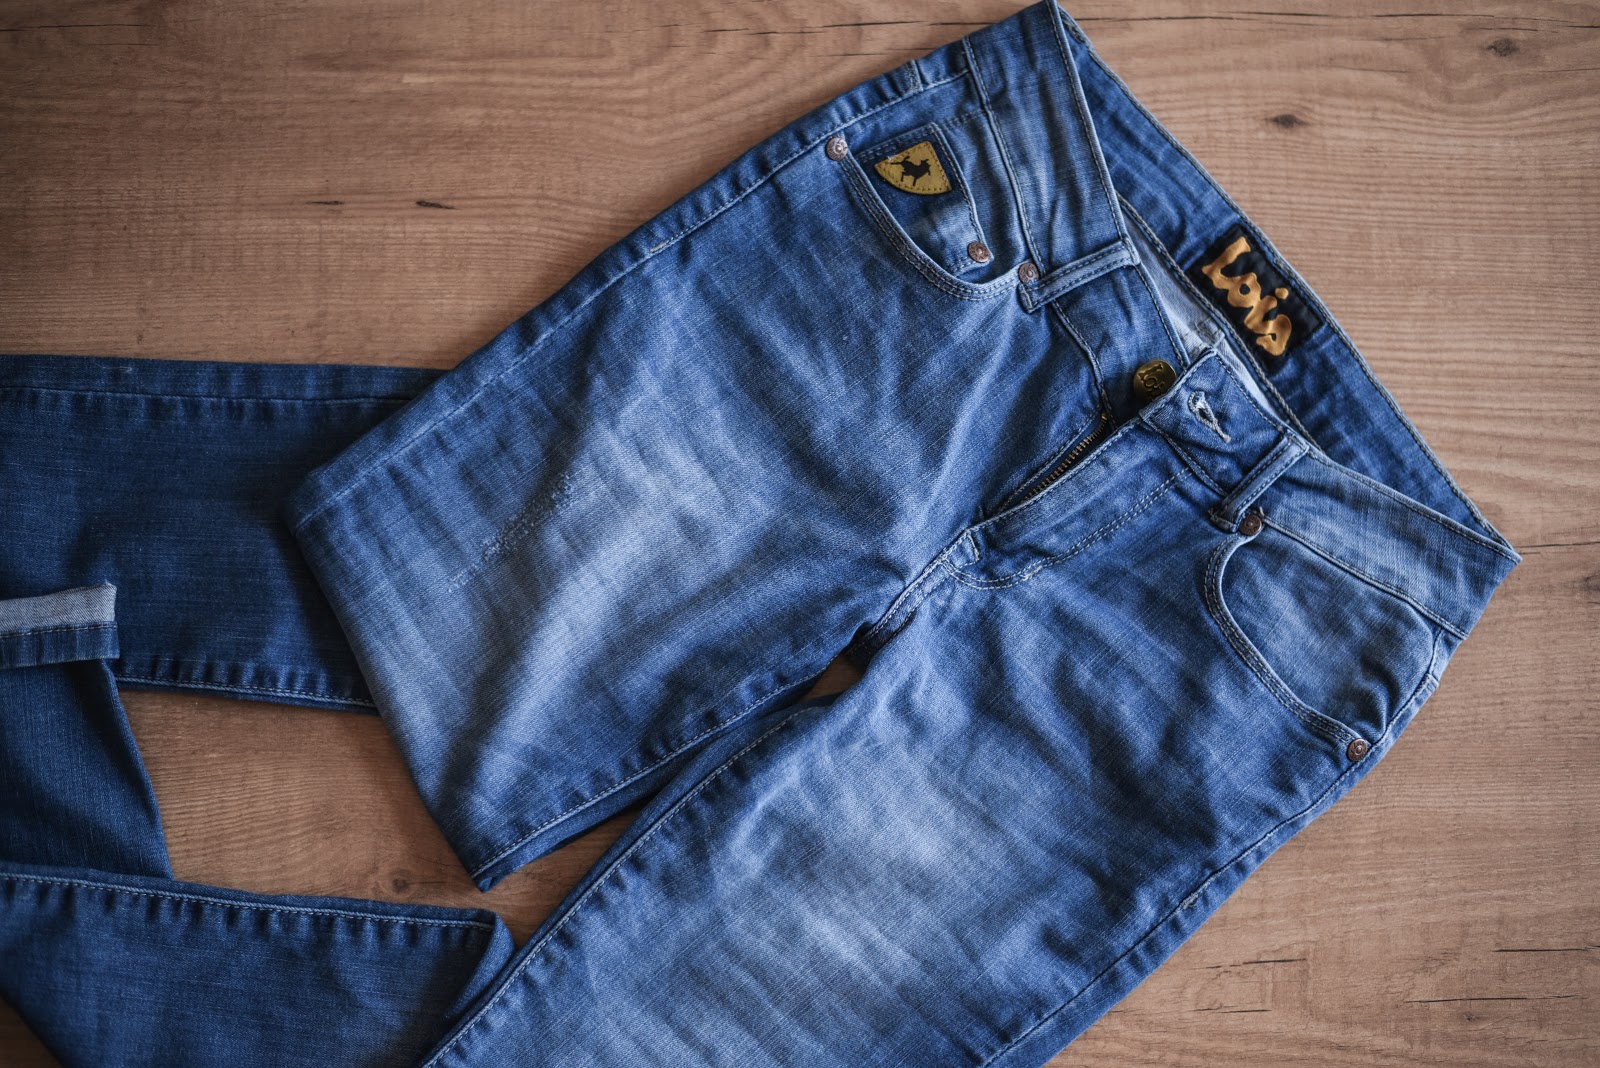 DIY_jeans_tutorial